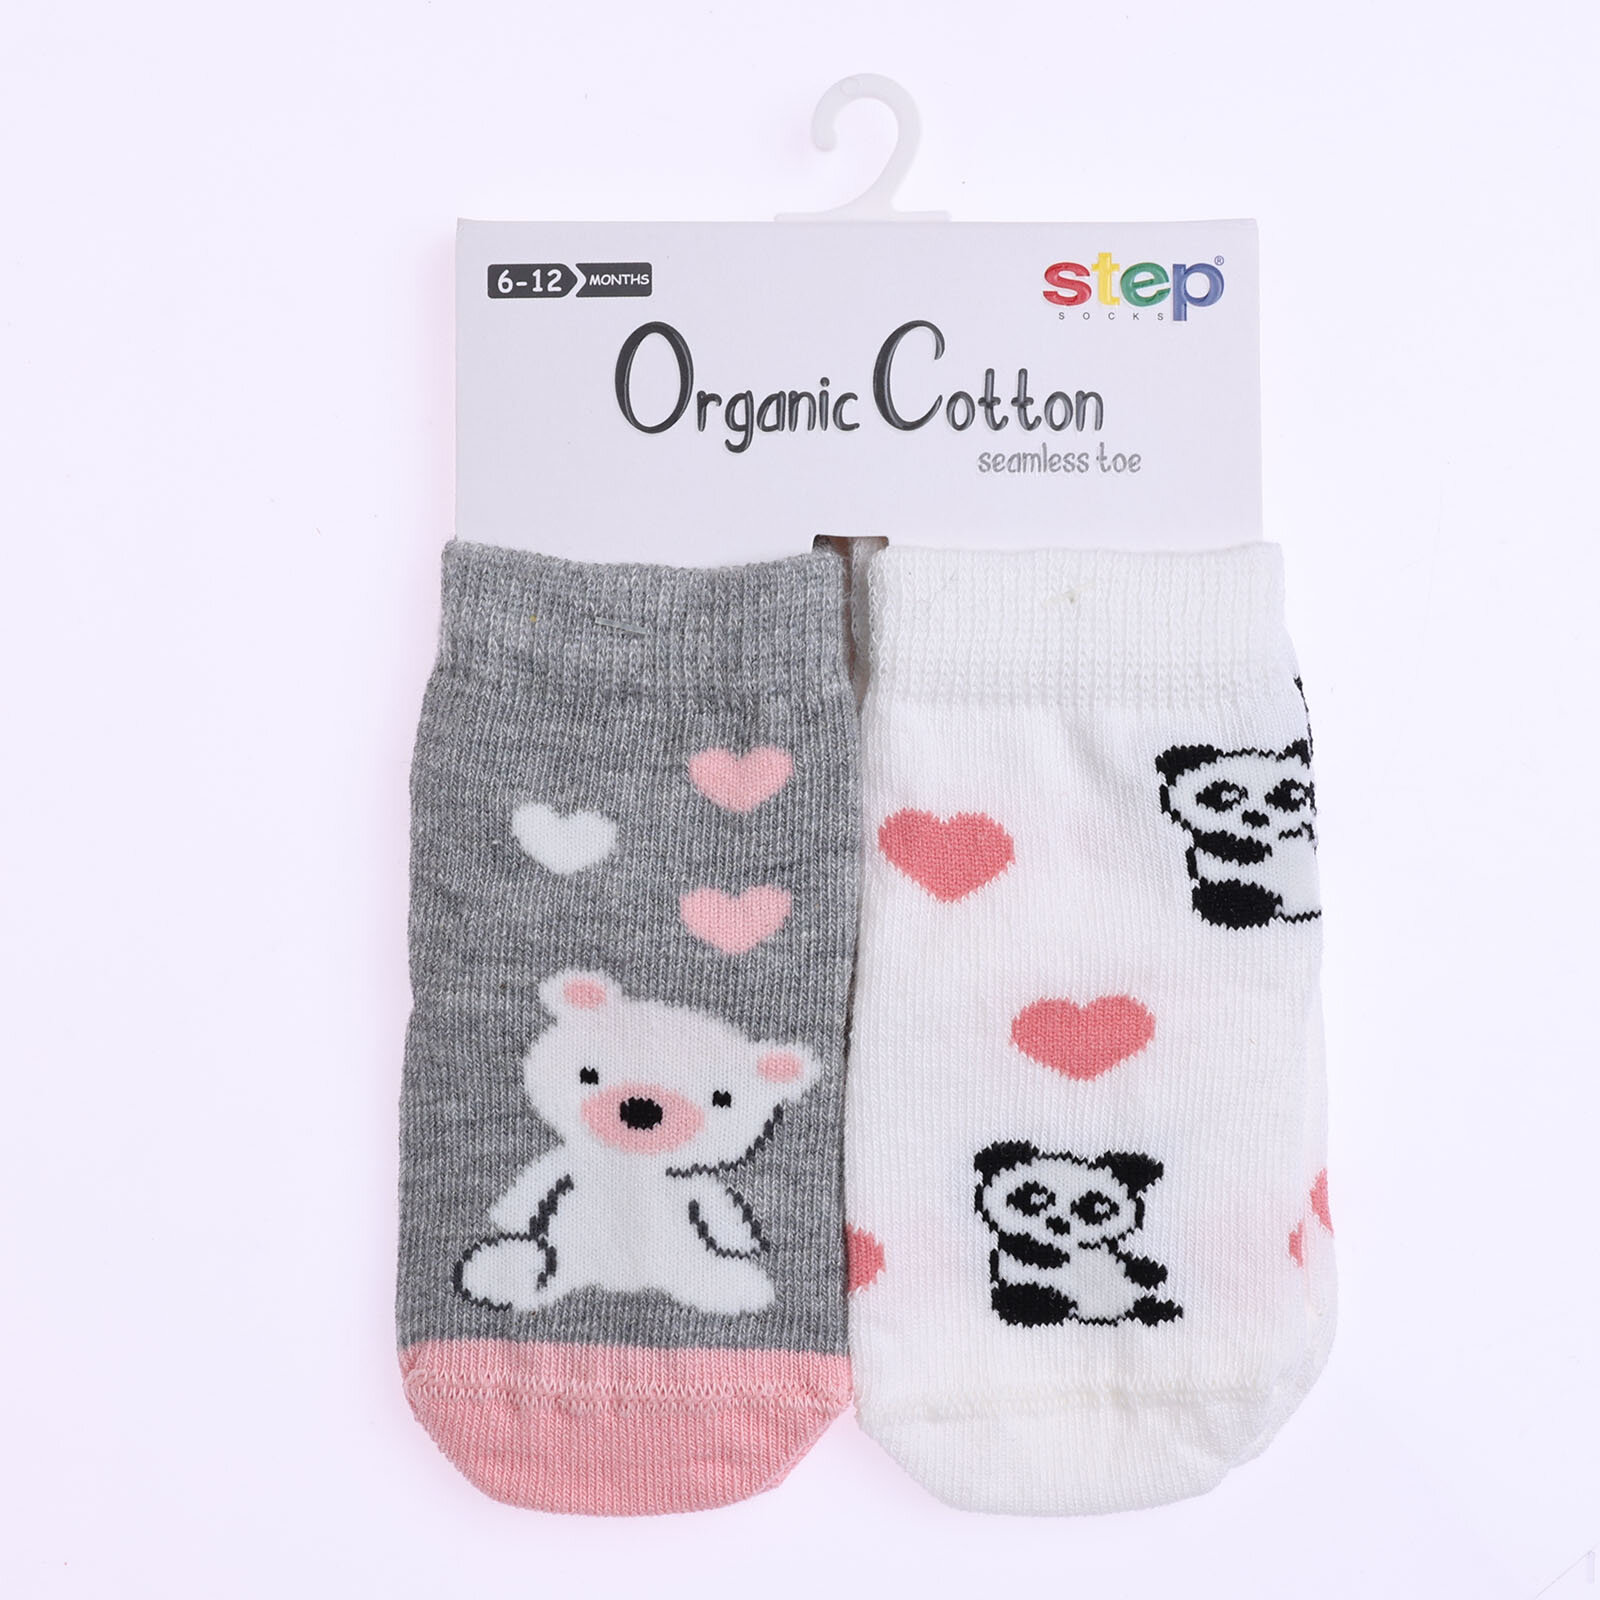 Ayı Desenli Soket 2'li Organik Çorap 2'li Organik Çorap Kız Bebek